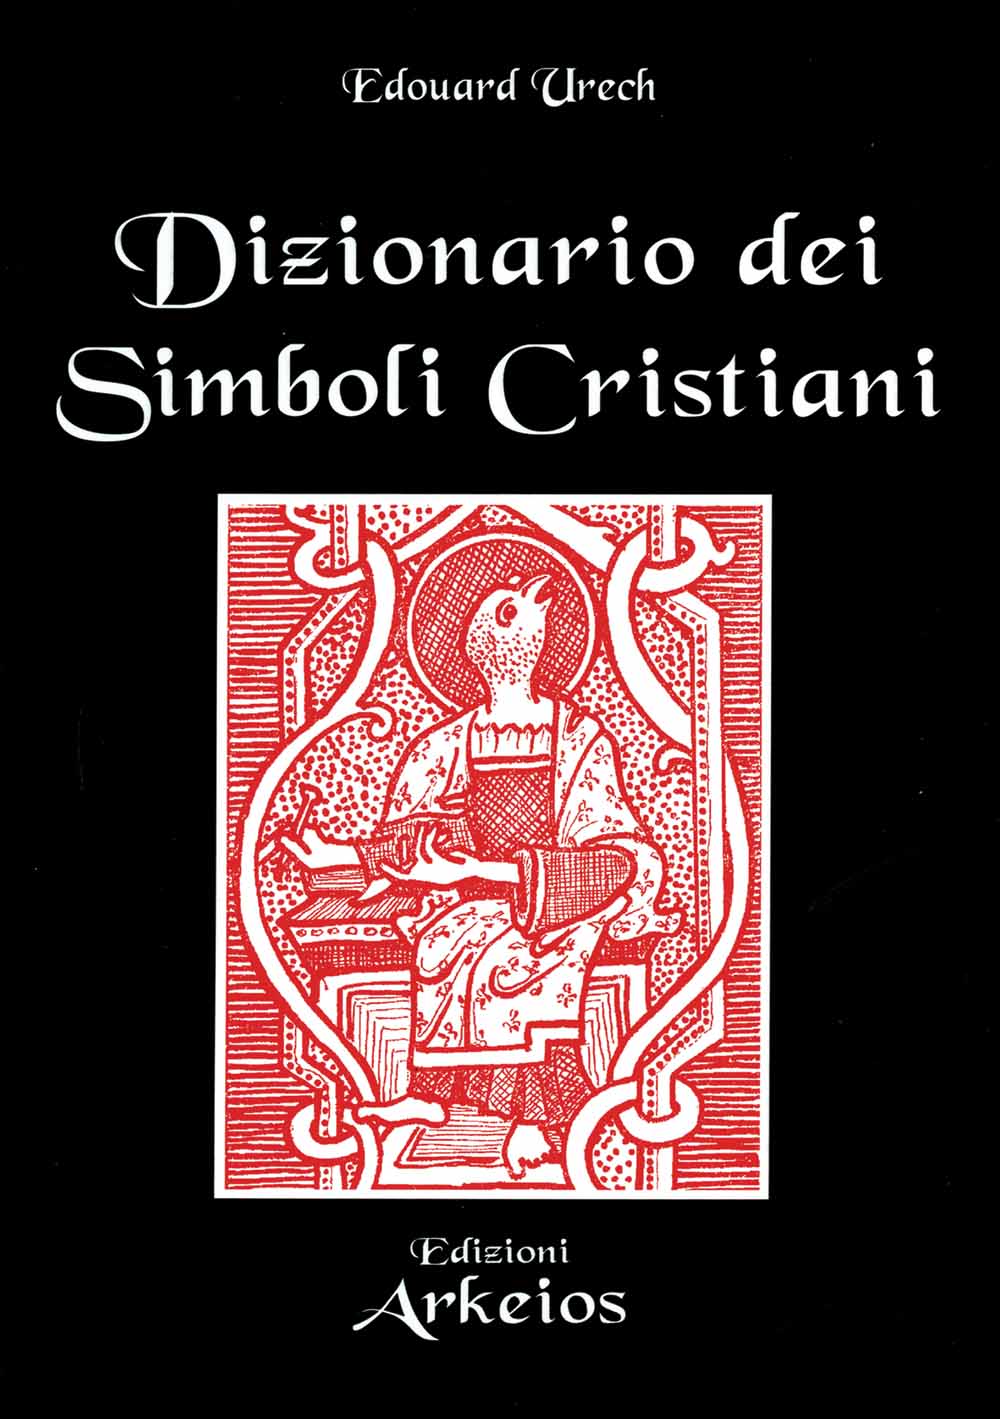 Libri Edouard Urech - Dizionario Dei Simboli Cristiani NUOVO SIGILLATO, EDIZIONE DEL 01/07/2000 SUBITO DISPONIBILE